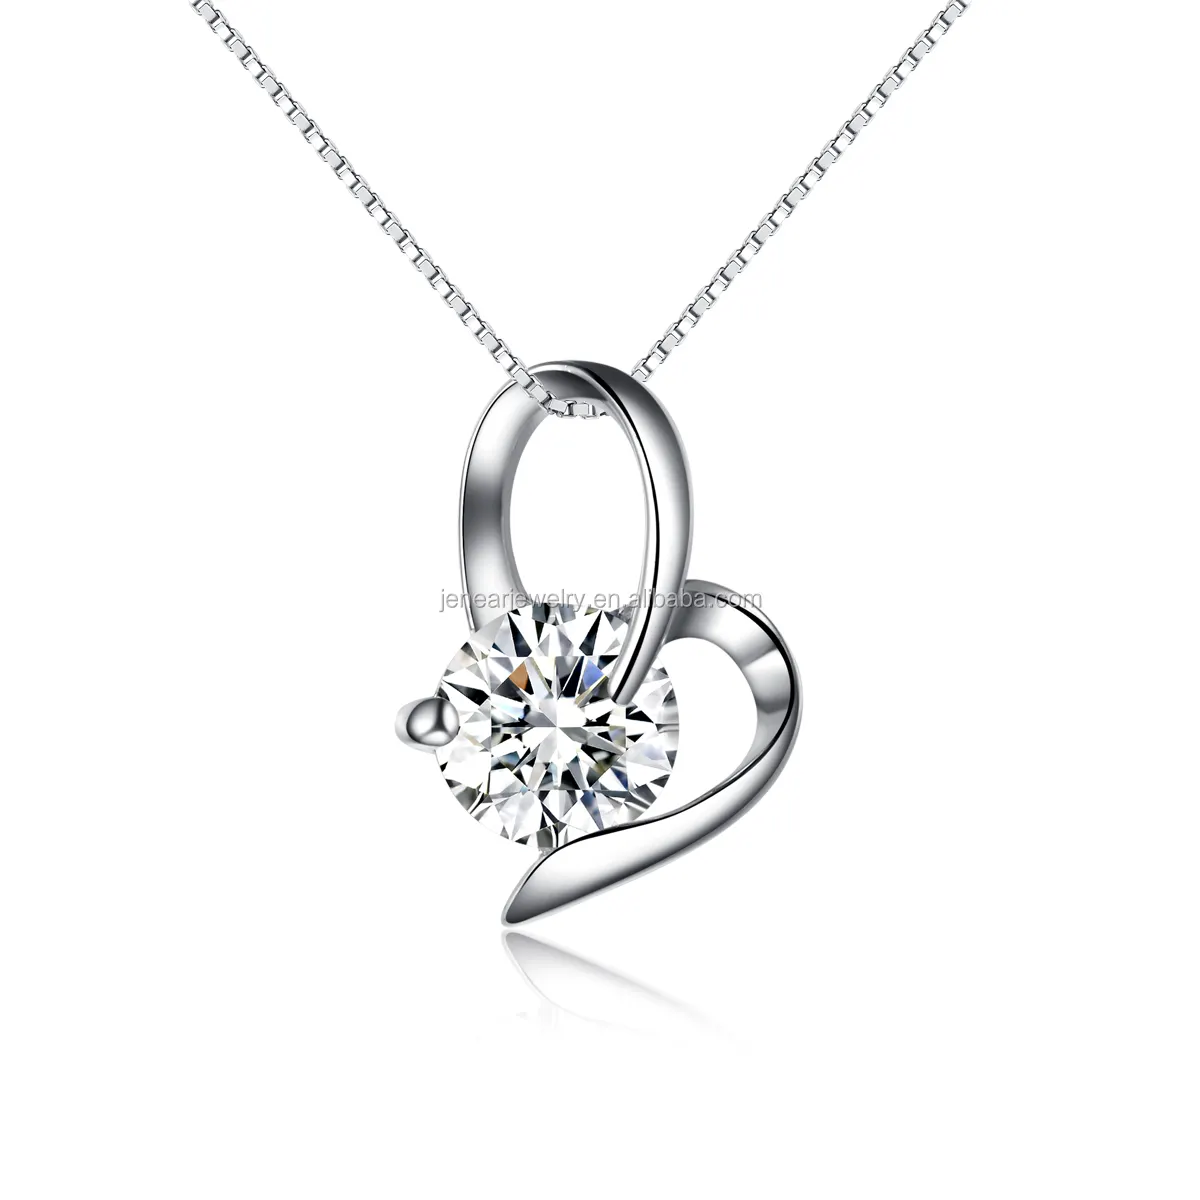 small genuine silver heart pendant women 925 silver CZ pendant rhodium plated simple heart pendant jewelry